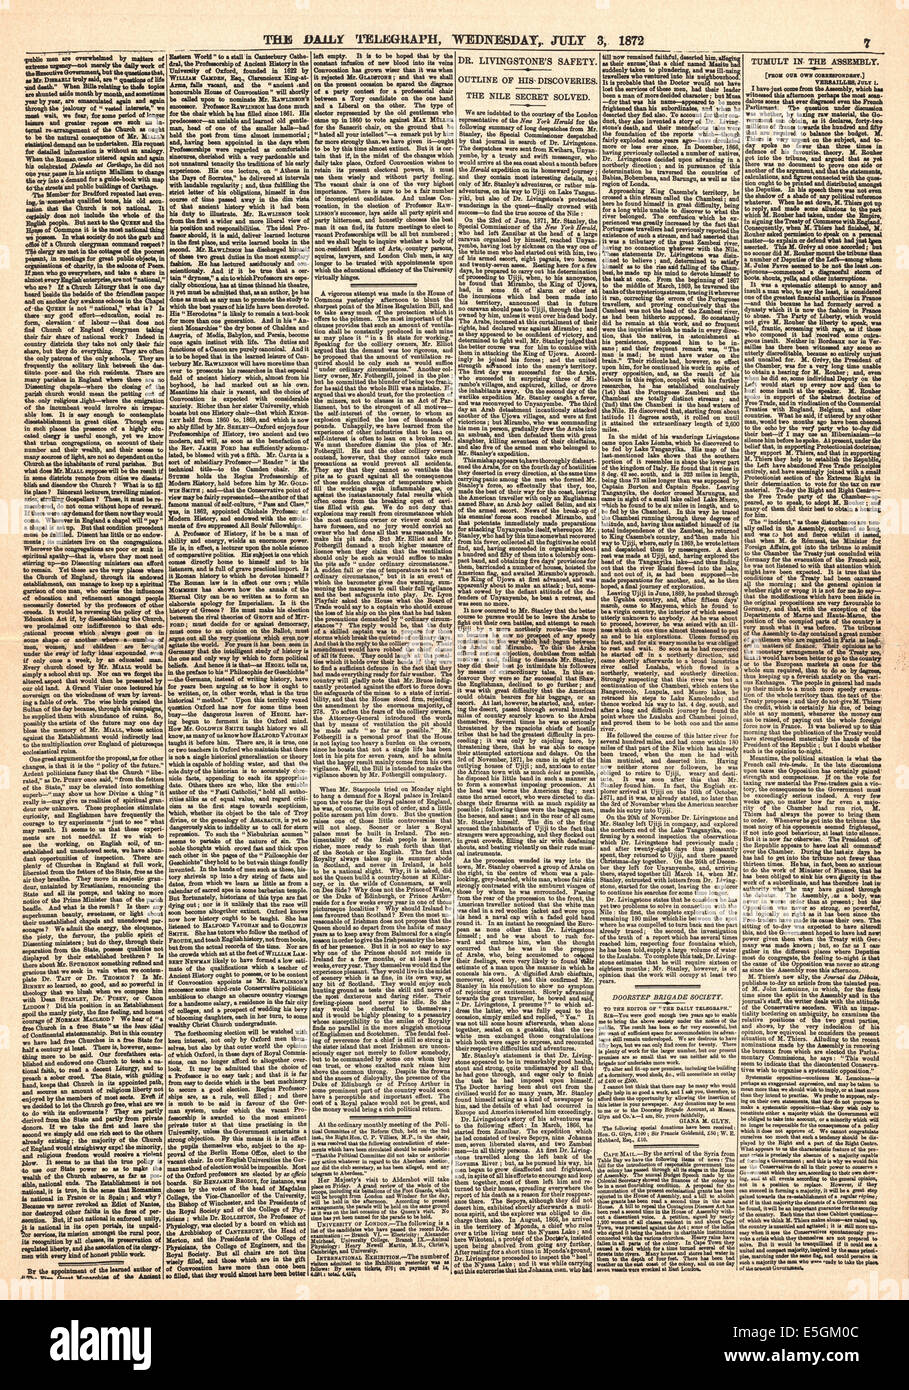 1872 daily Telegraph Seite 7 Berichterstattung der Sitzung des Dr. Livingstone und Henry Morton Stanley mit der Frage "Dr. Livingstone ich vermute"? Stockfoto